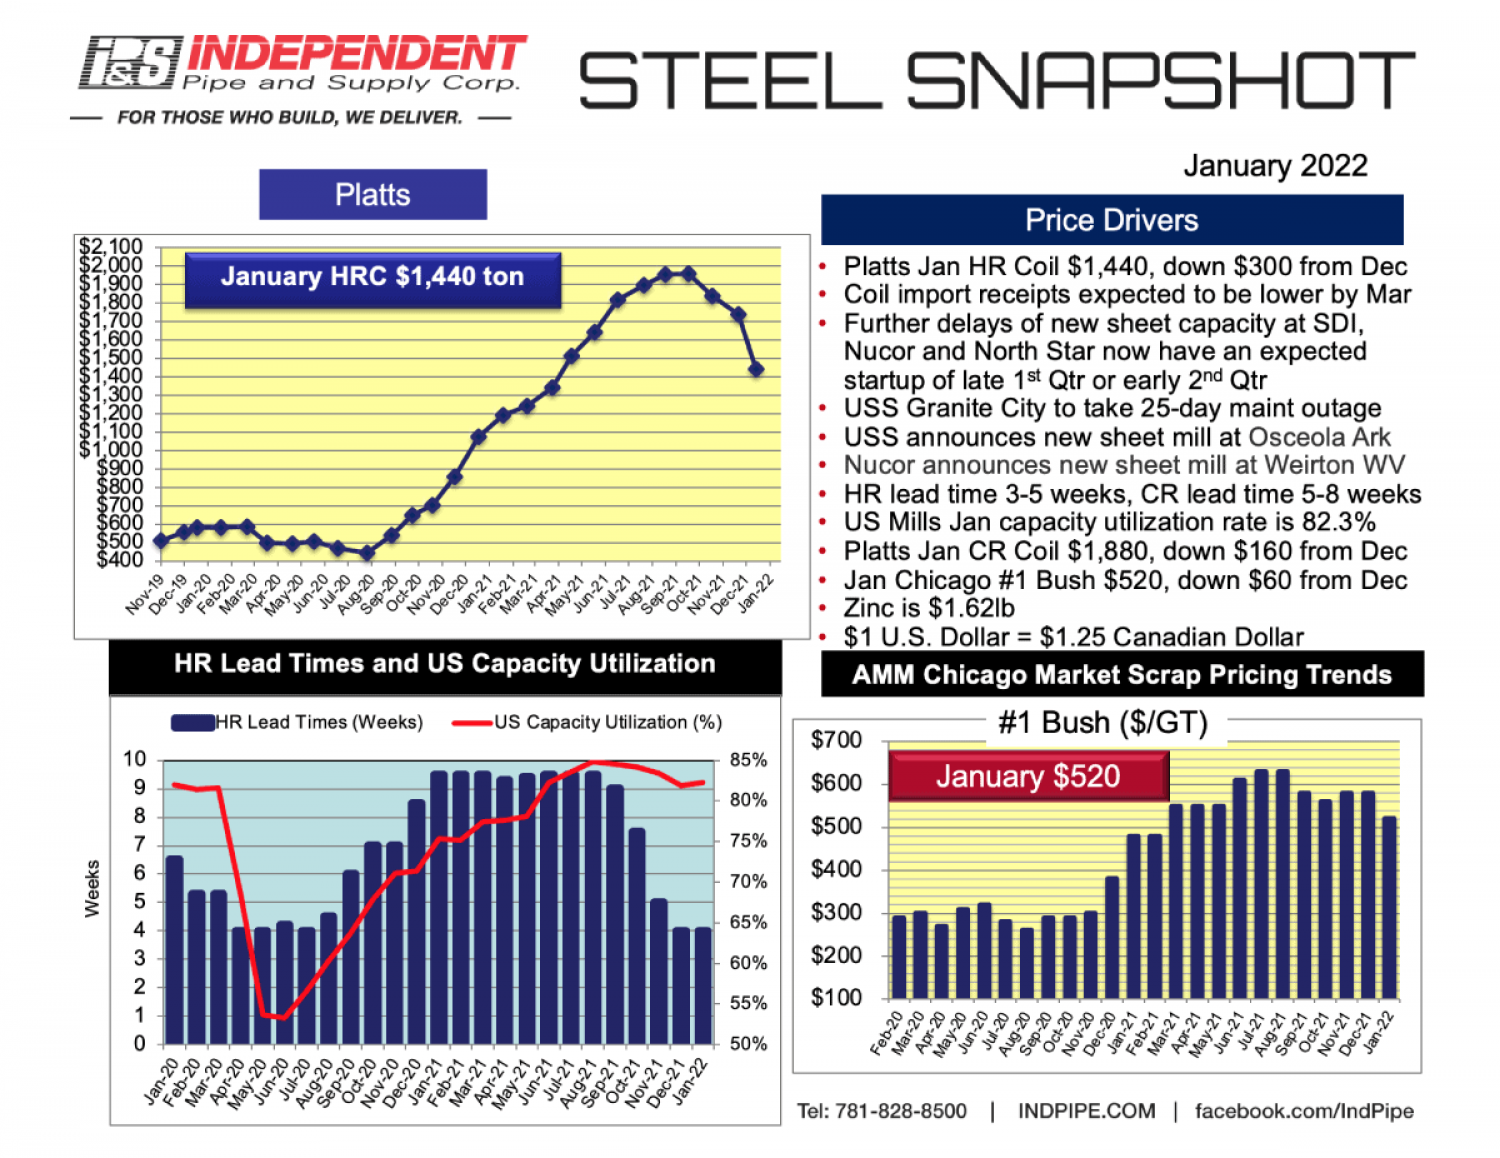 IPS_Steel-Snapshot_0122_January2021